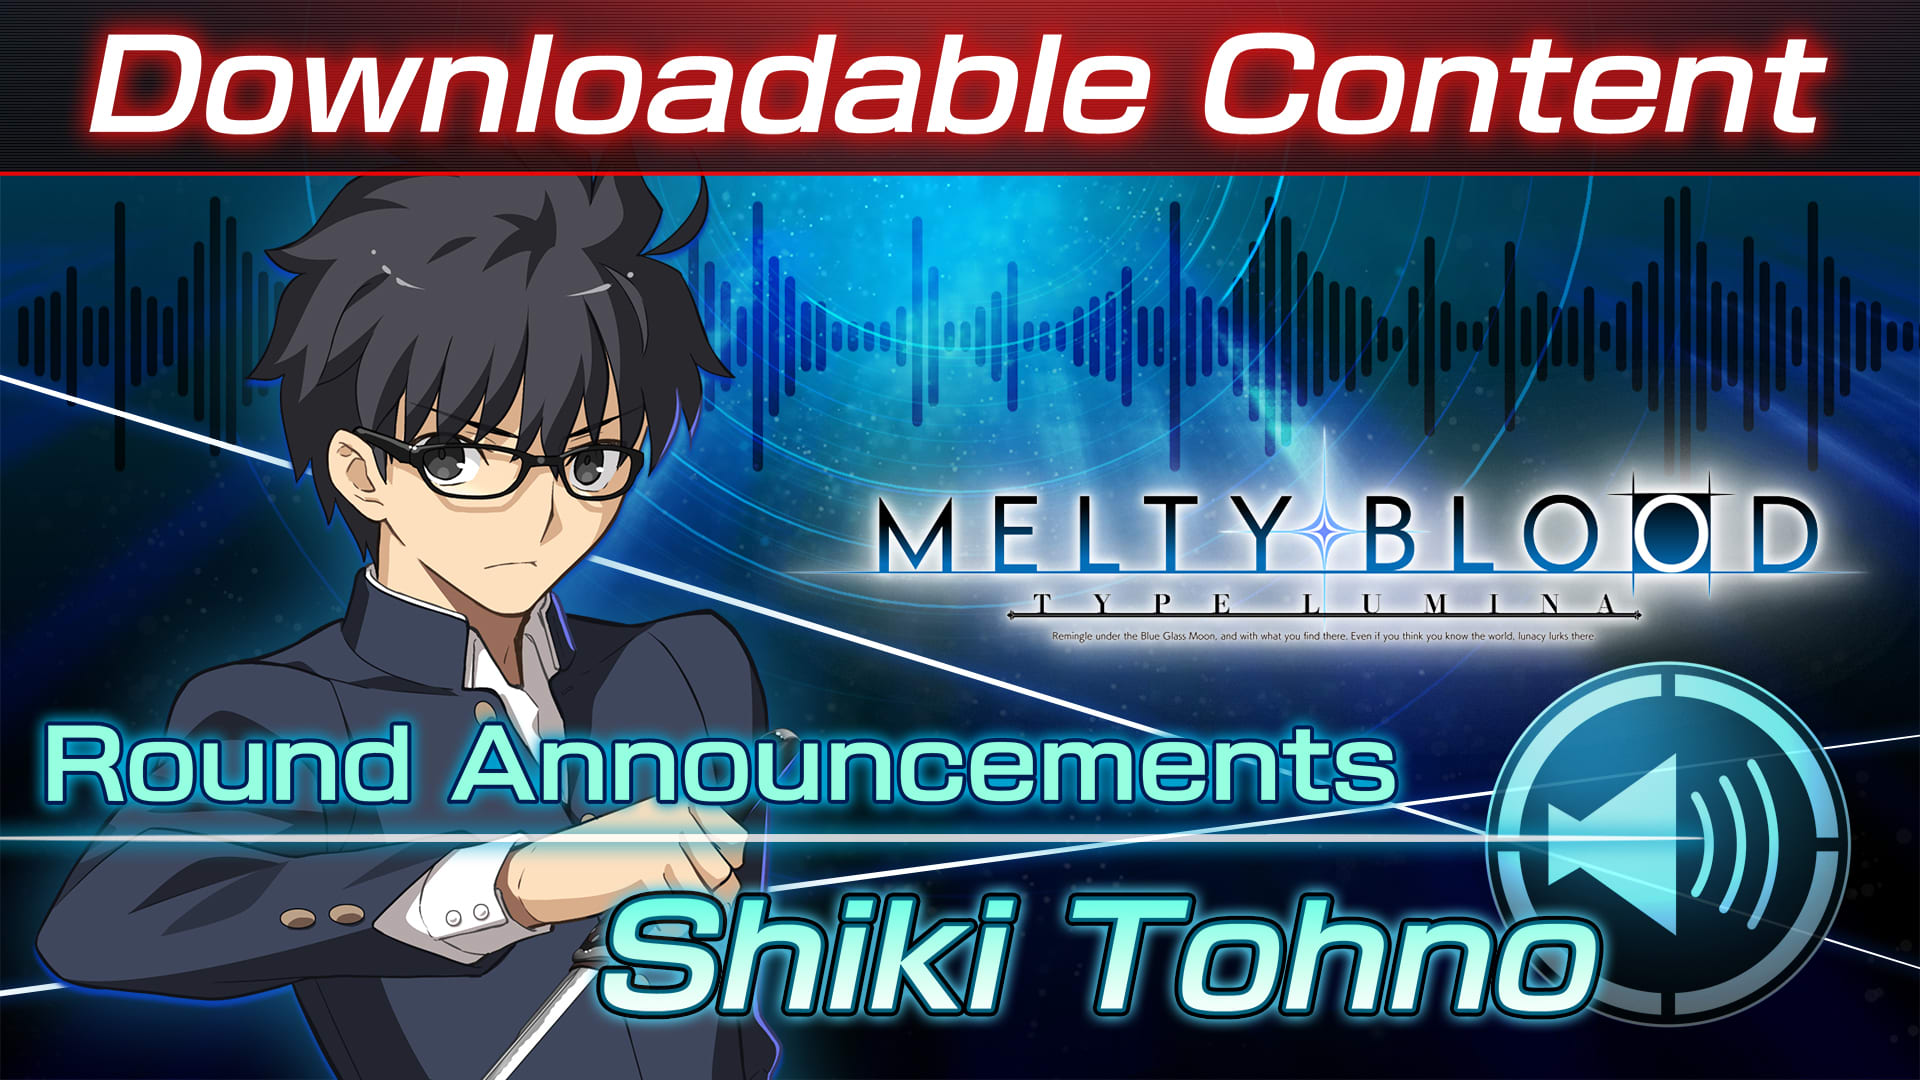 Contenido adicional: "Shiki Tohno Round Announcements"